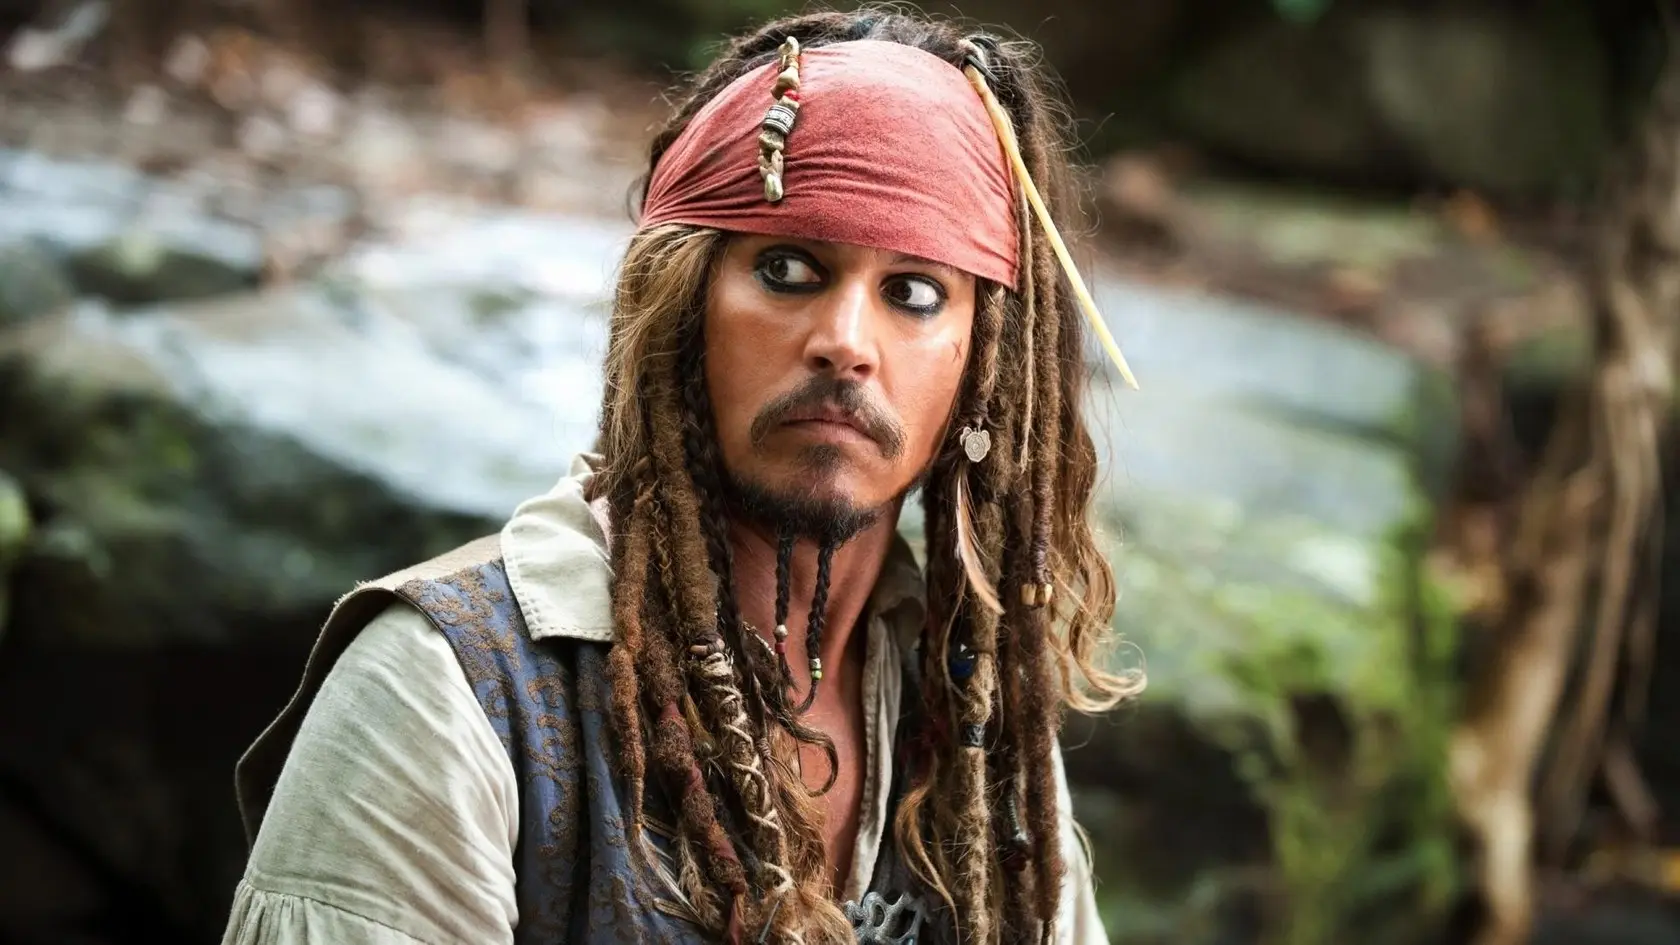 Piráti z Karibiku 5 nemají zdaleka vyhráno: Jejich natáčení je v nedohlednu